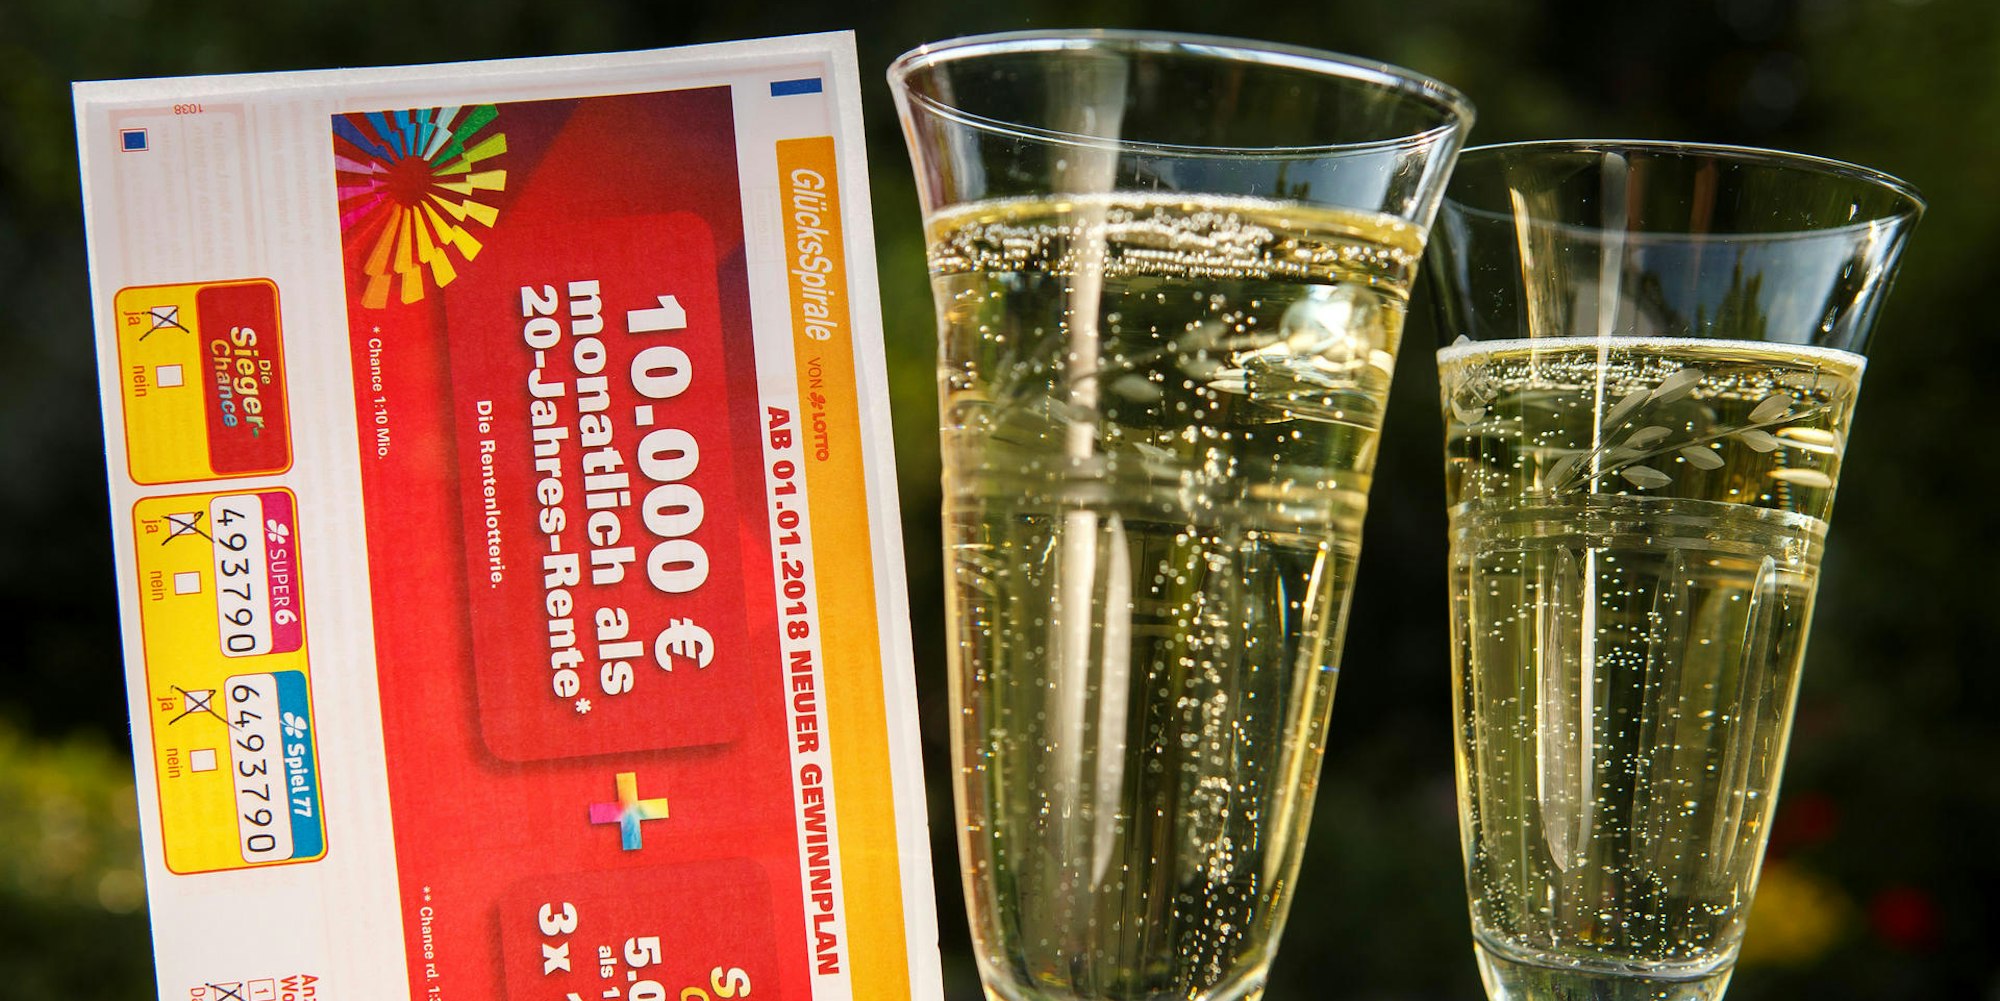 Bei der GlücksSpirale-Sonderauslosung am kommenden Samstag, 6. März, gibt es 200x5.000 Euro extra zu gewinnen.